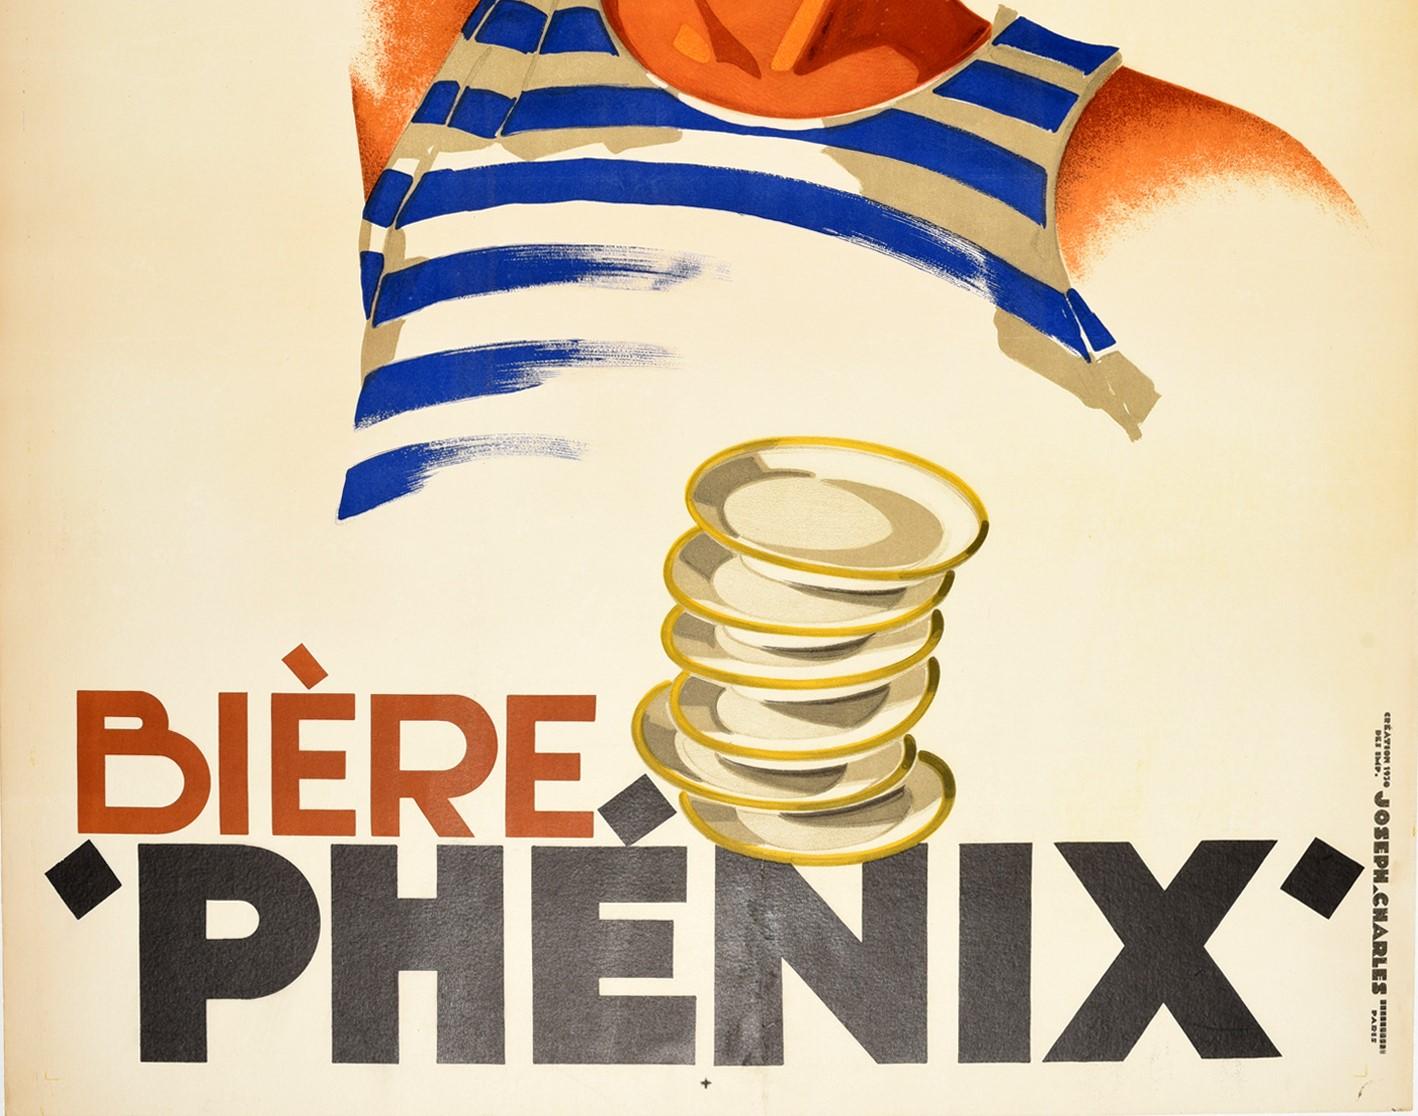 phenix biere